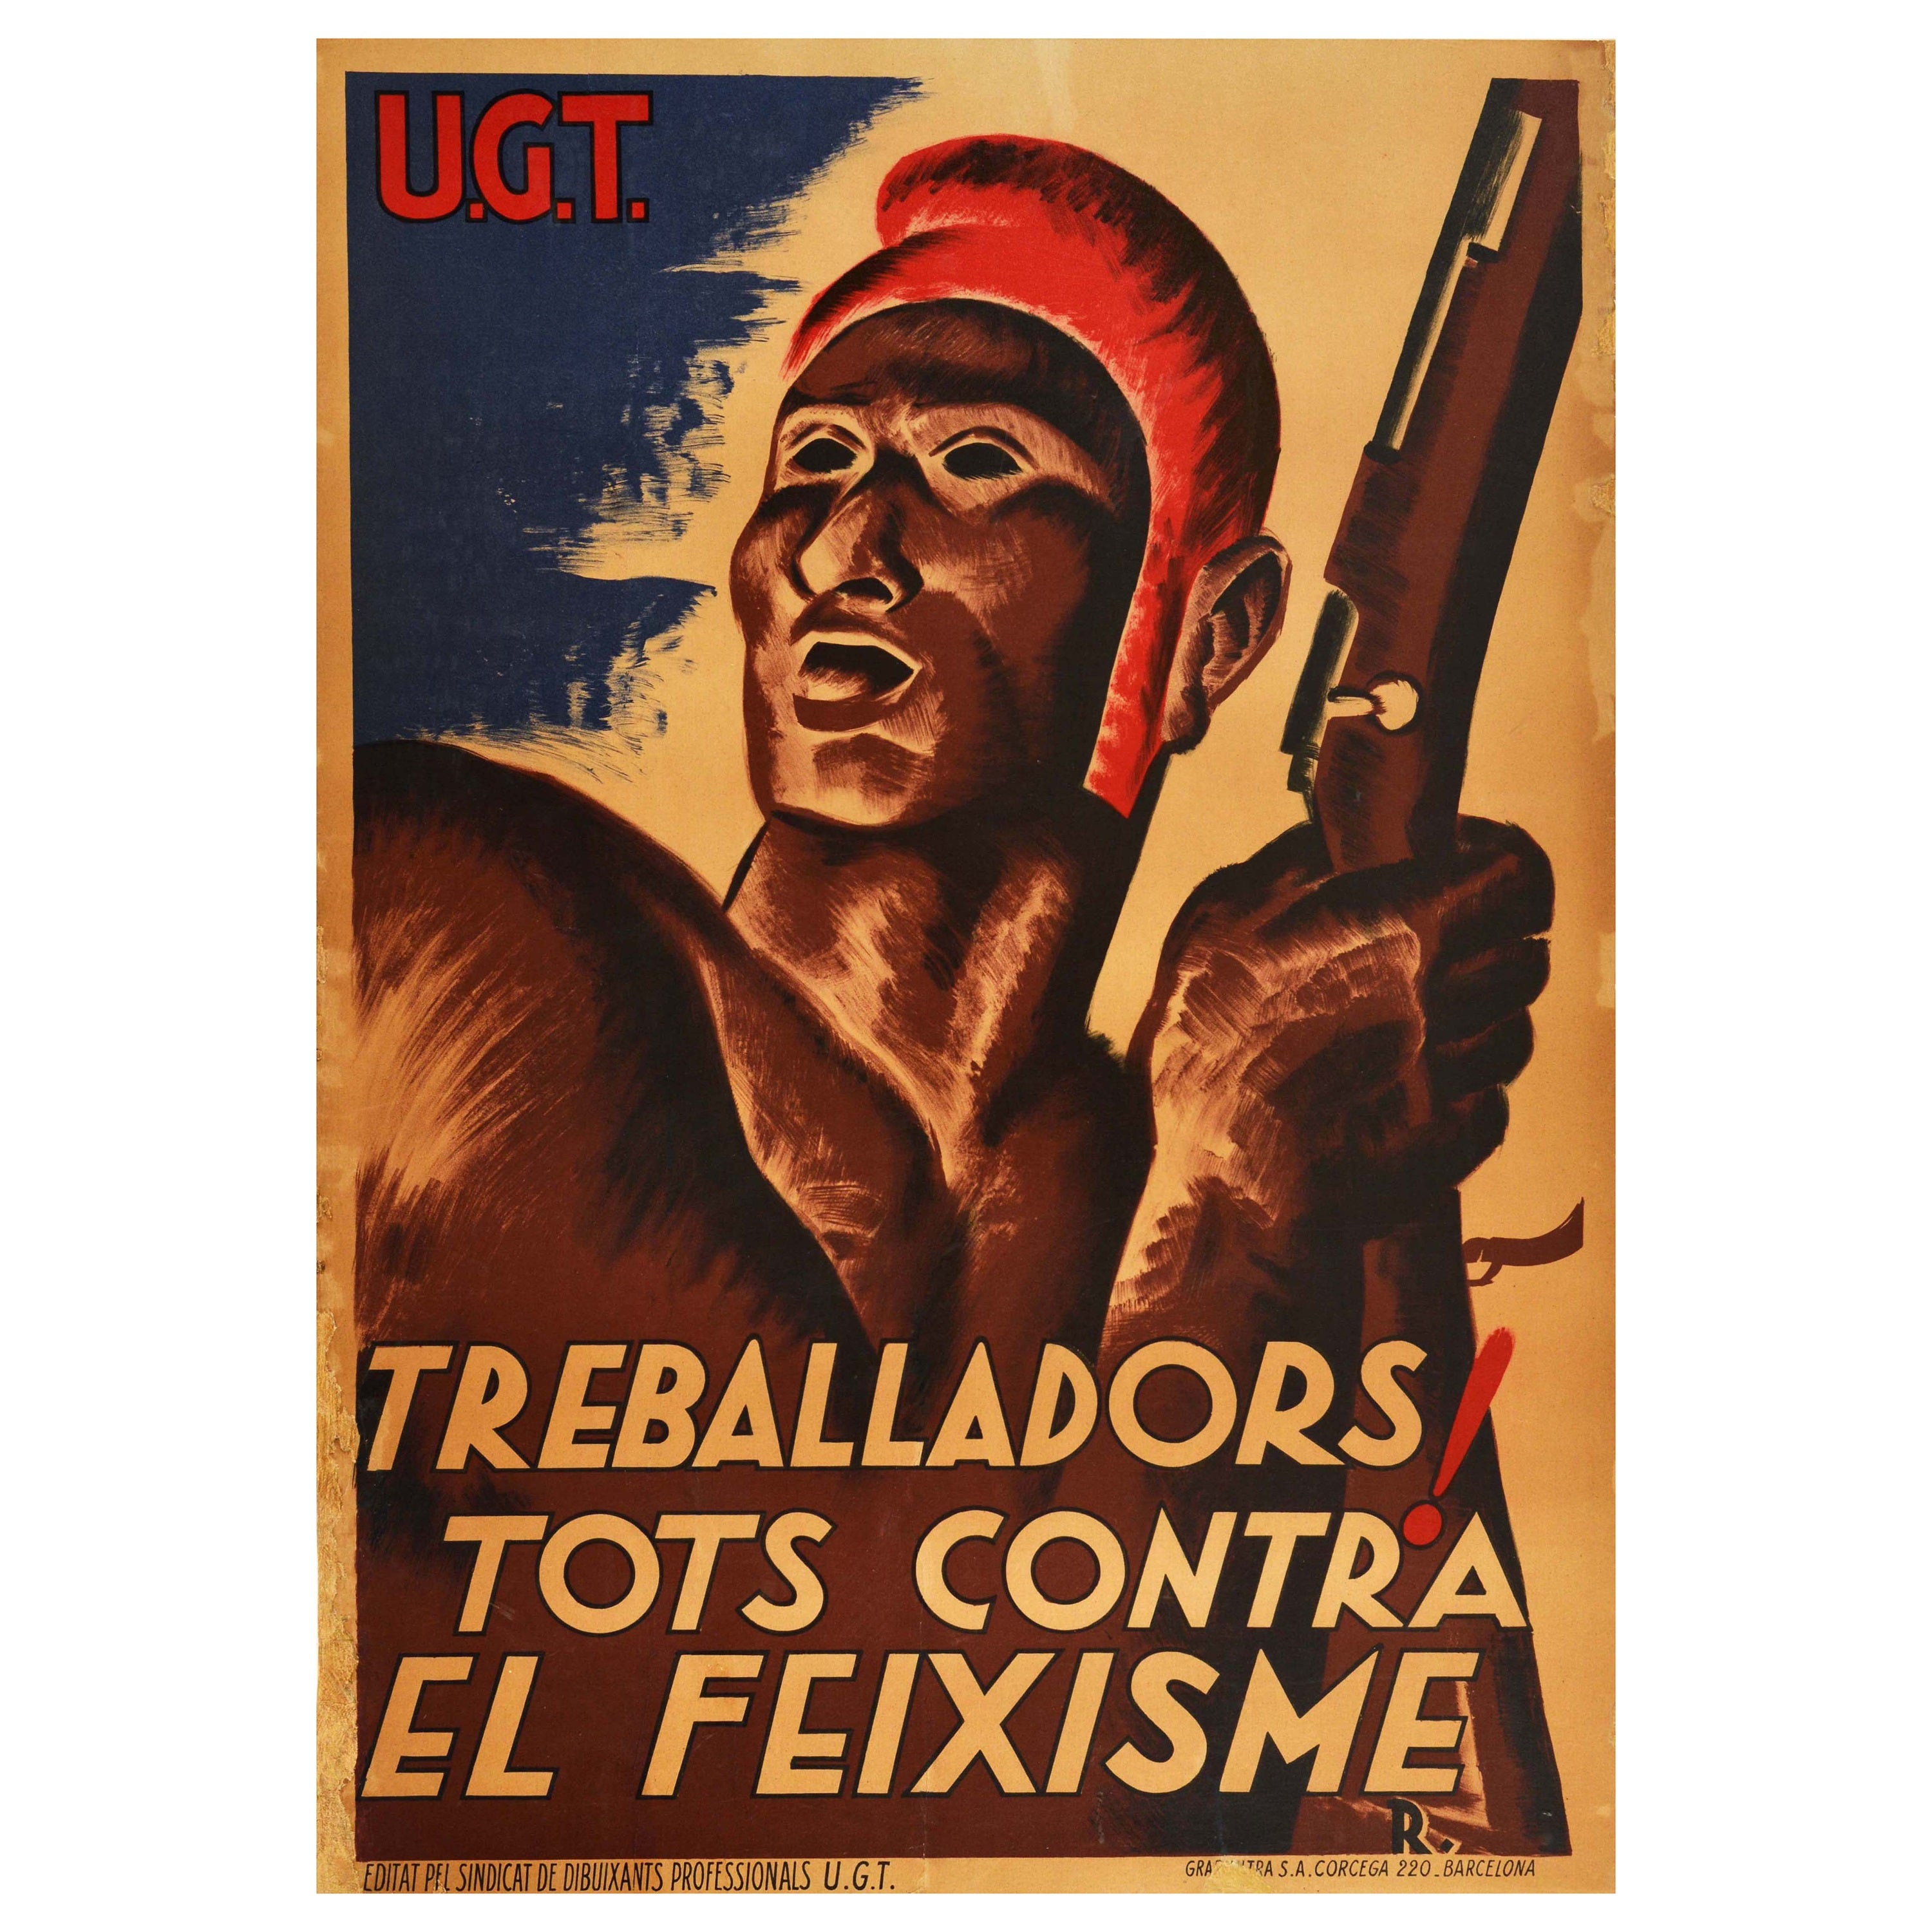 Cartel Vintage Original de la Guerra Civil Española ¡Treballadors! Trabajadores contra el fascismo